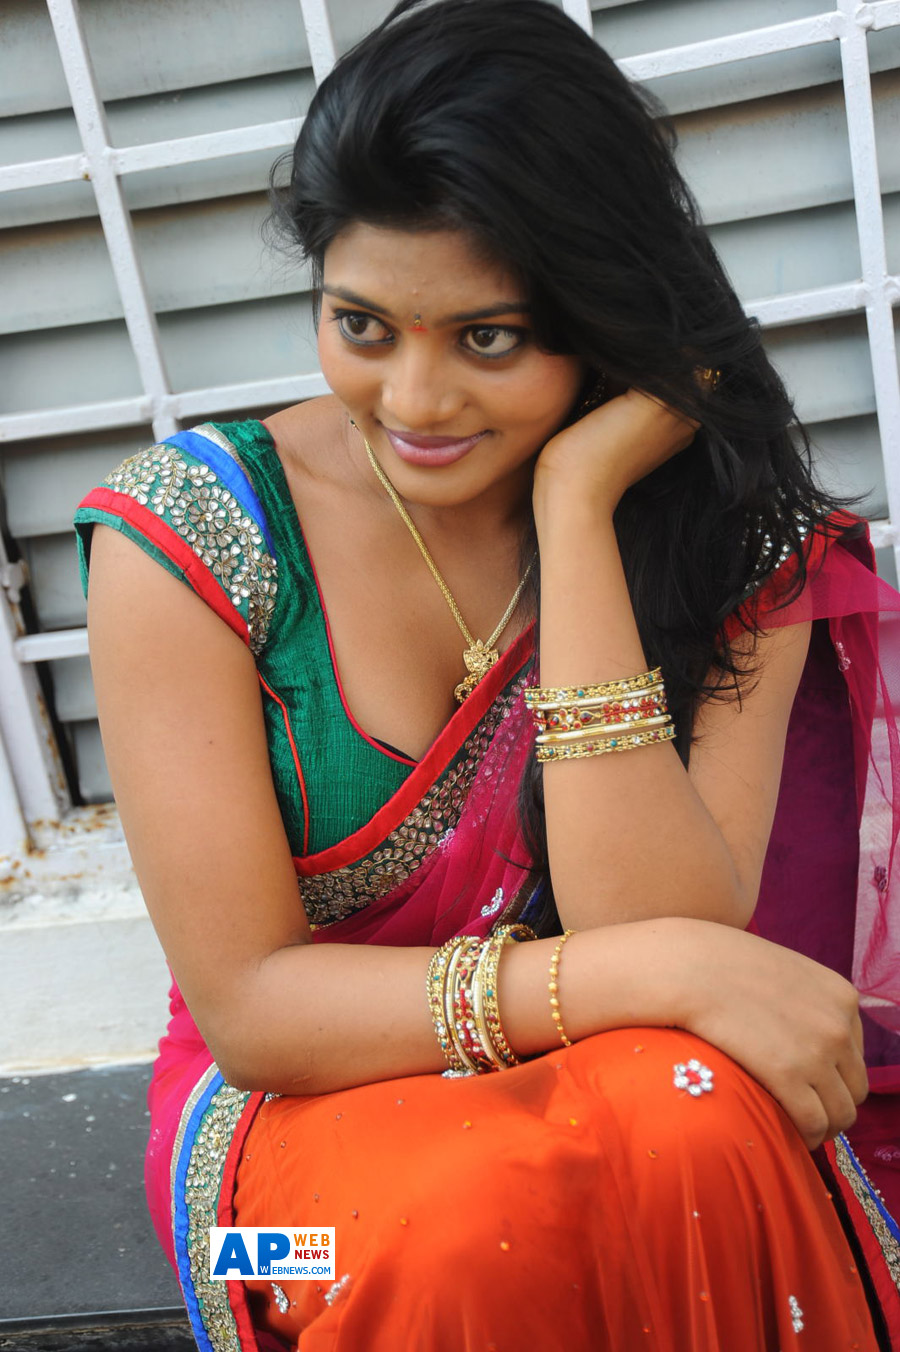 New Telugu Actress Soumya Hot Photo Stills | AP Web News